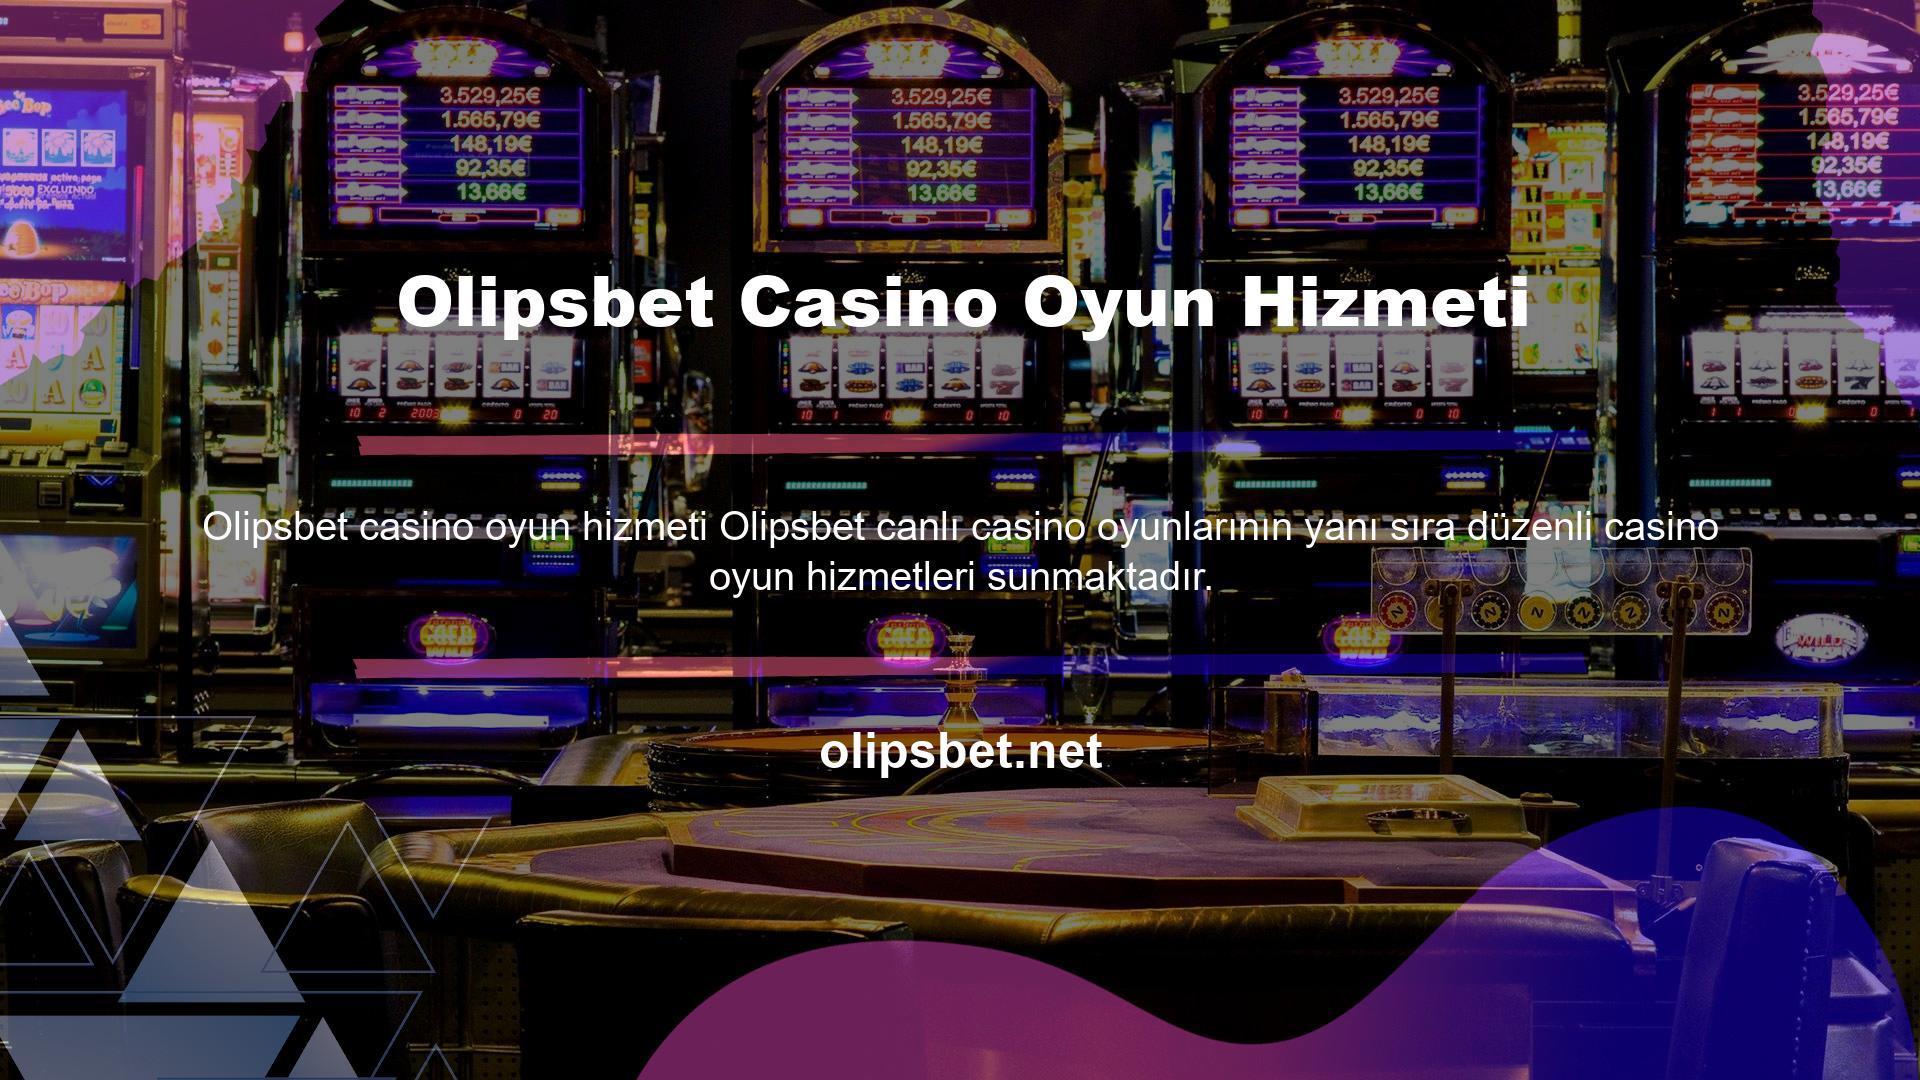 Olipsbet Casino Oyun Hizmeti